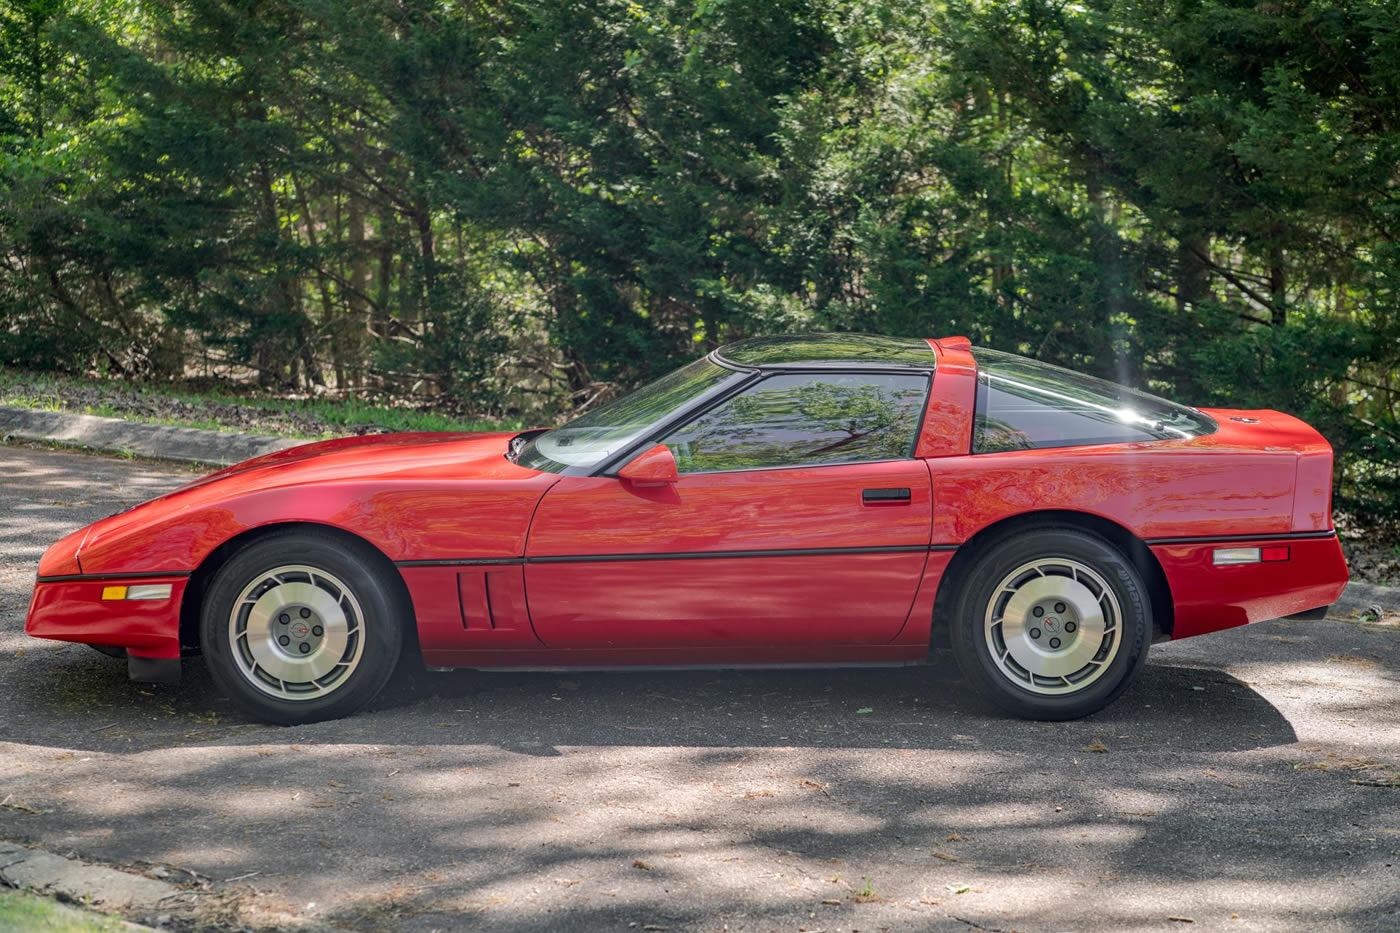 1987 Corvette Coupe in Bright Red